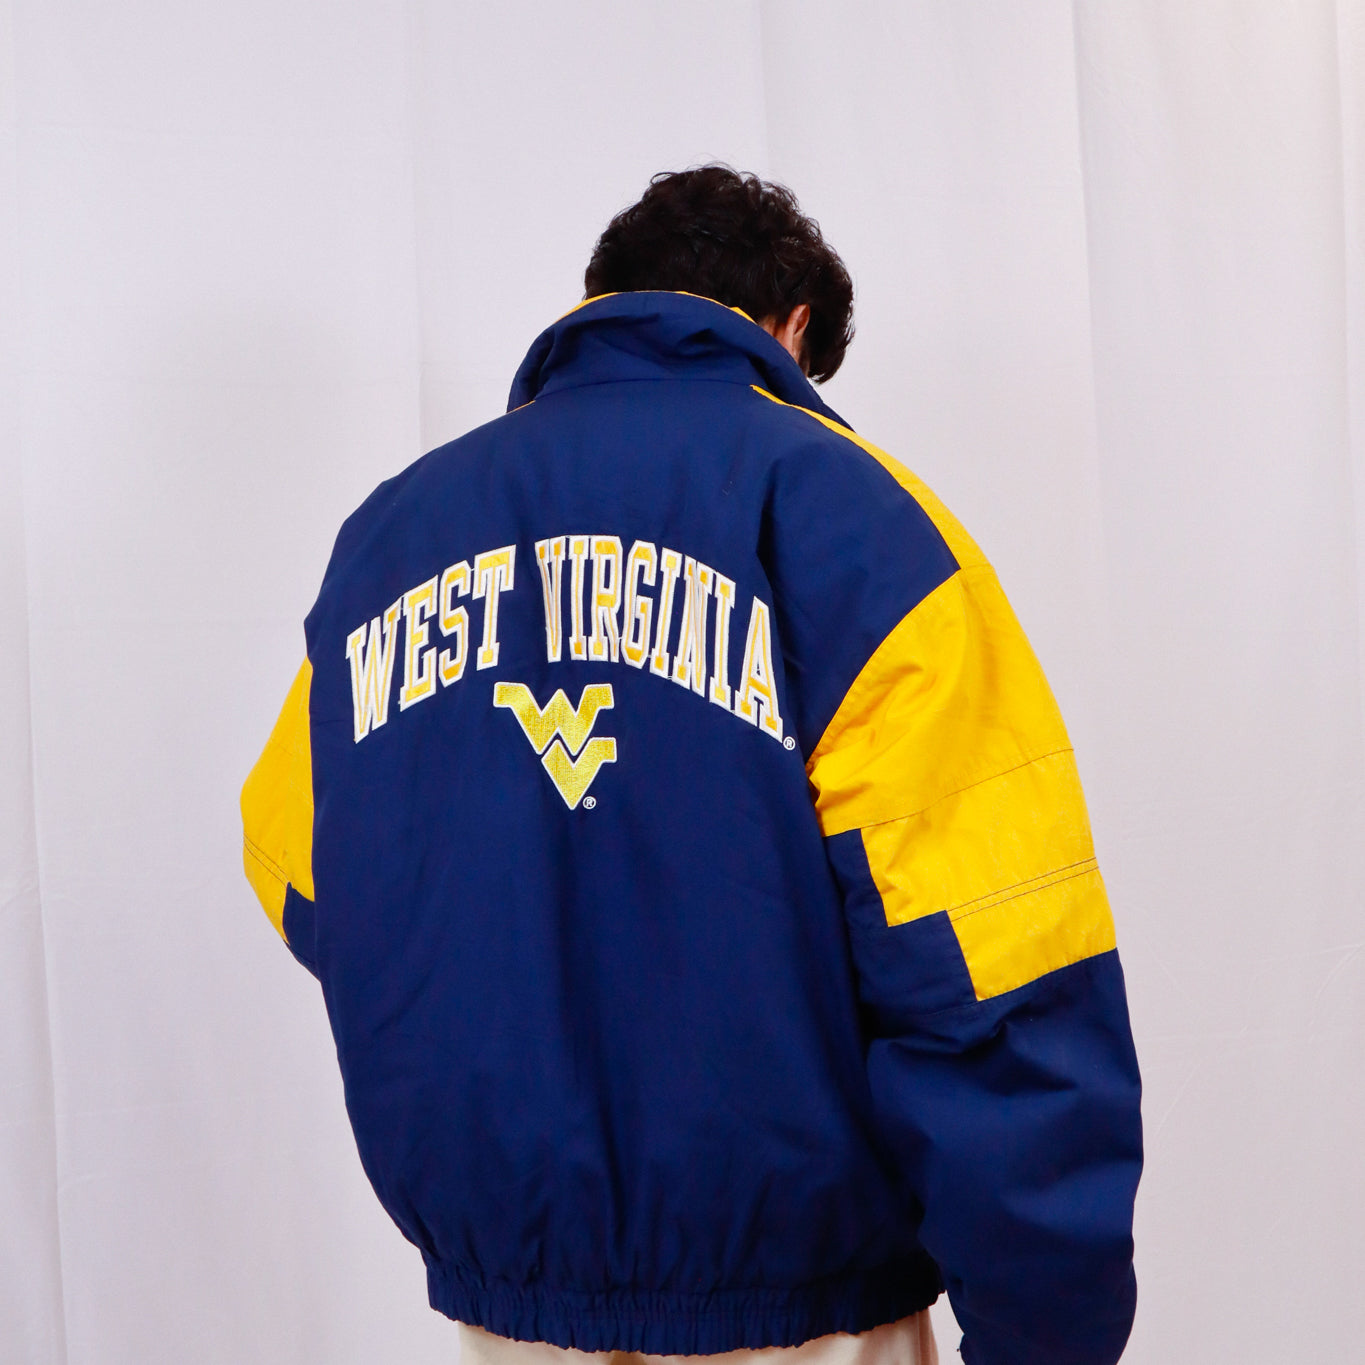 Vintage West Virgina Jacket